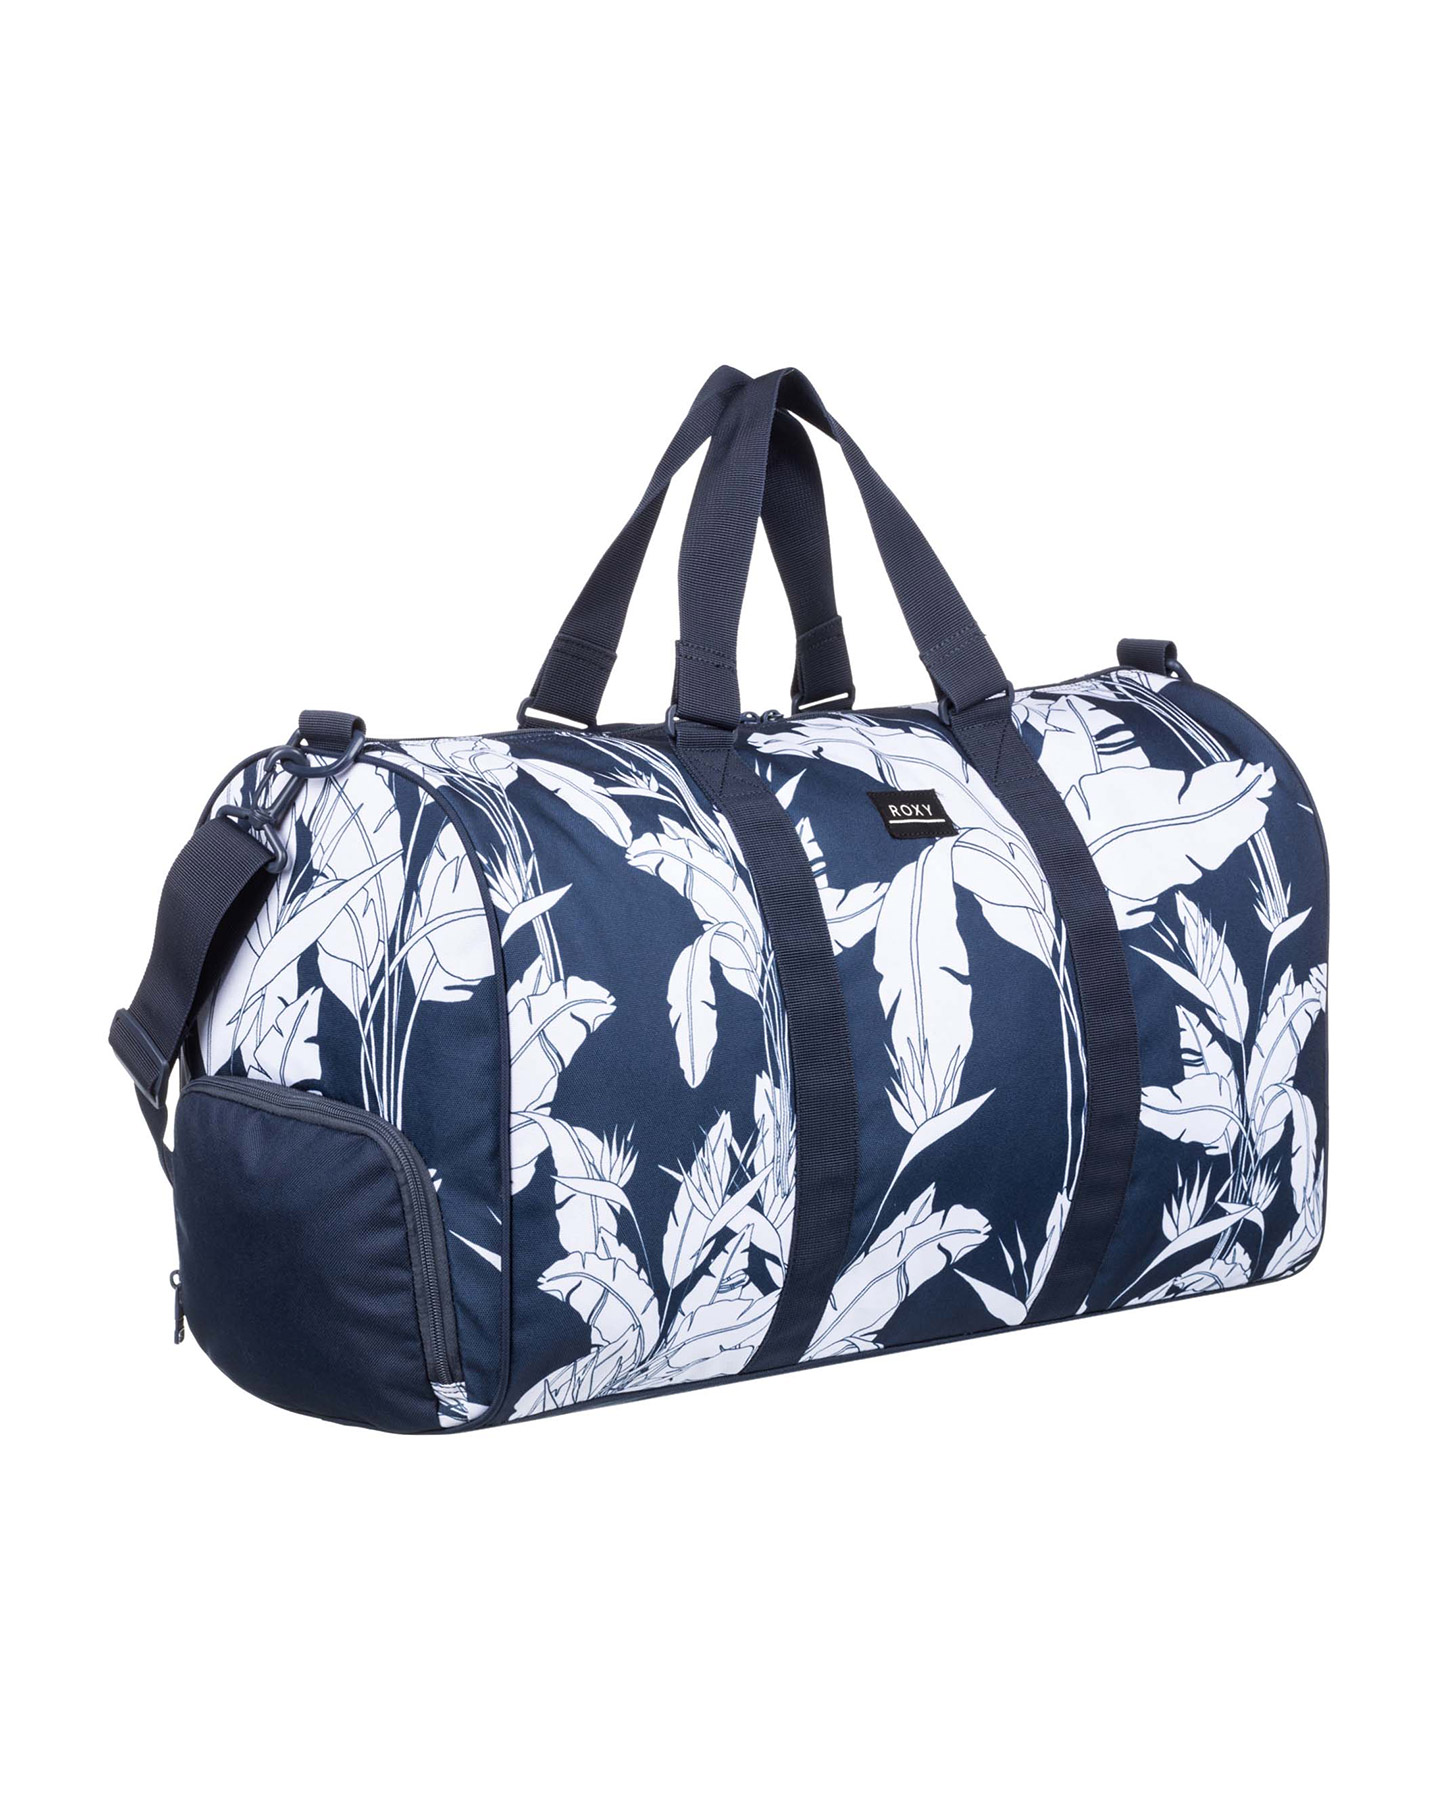 Roxy Pumpkin Spice 43L Medium Travel Duffle Bag - Mood Indigo | SurfStitch